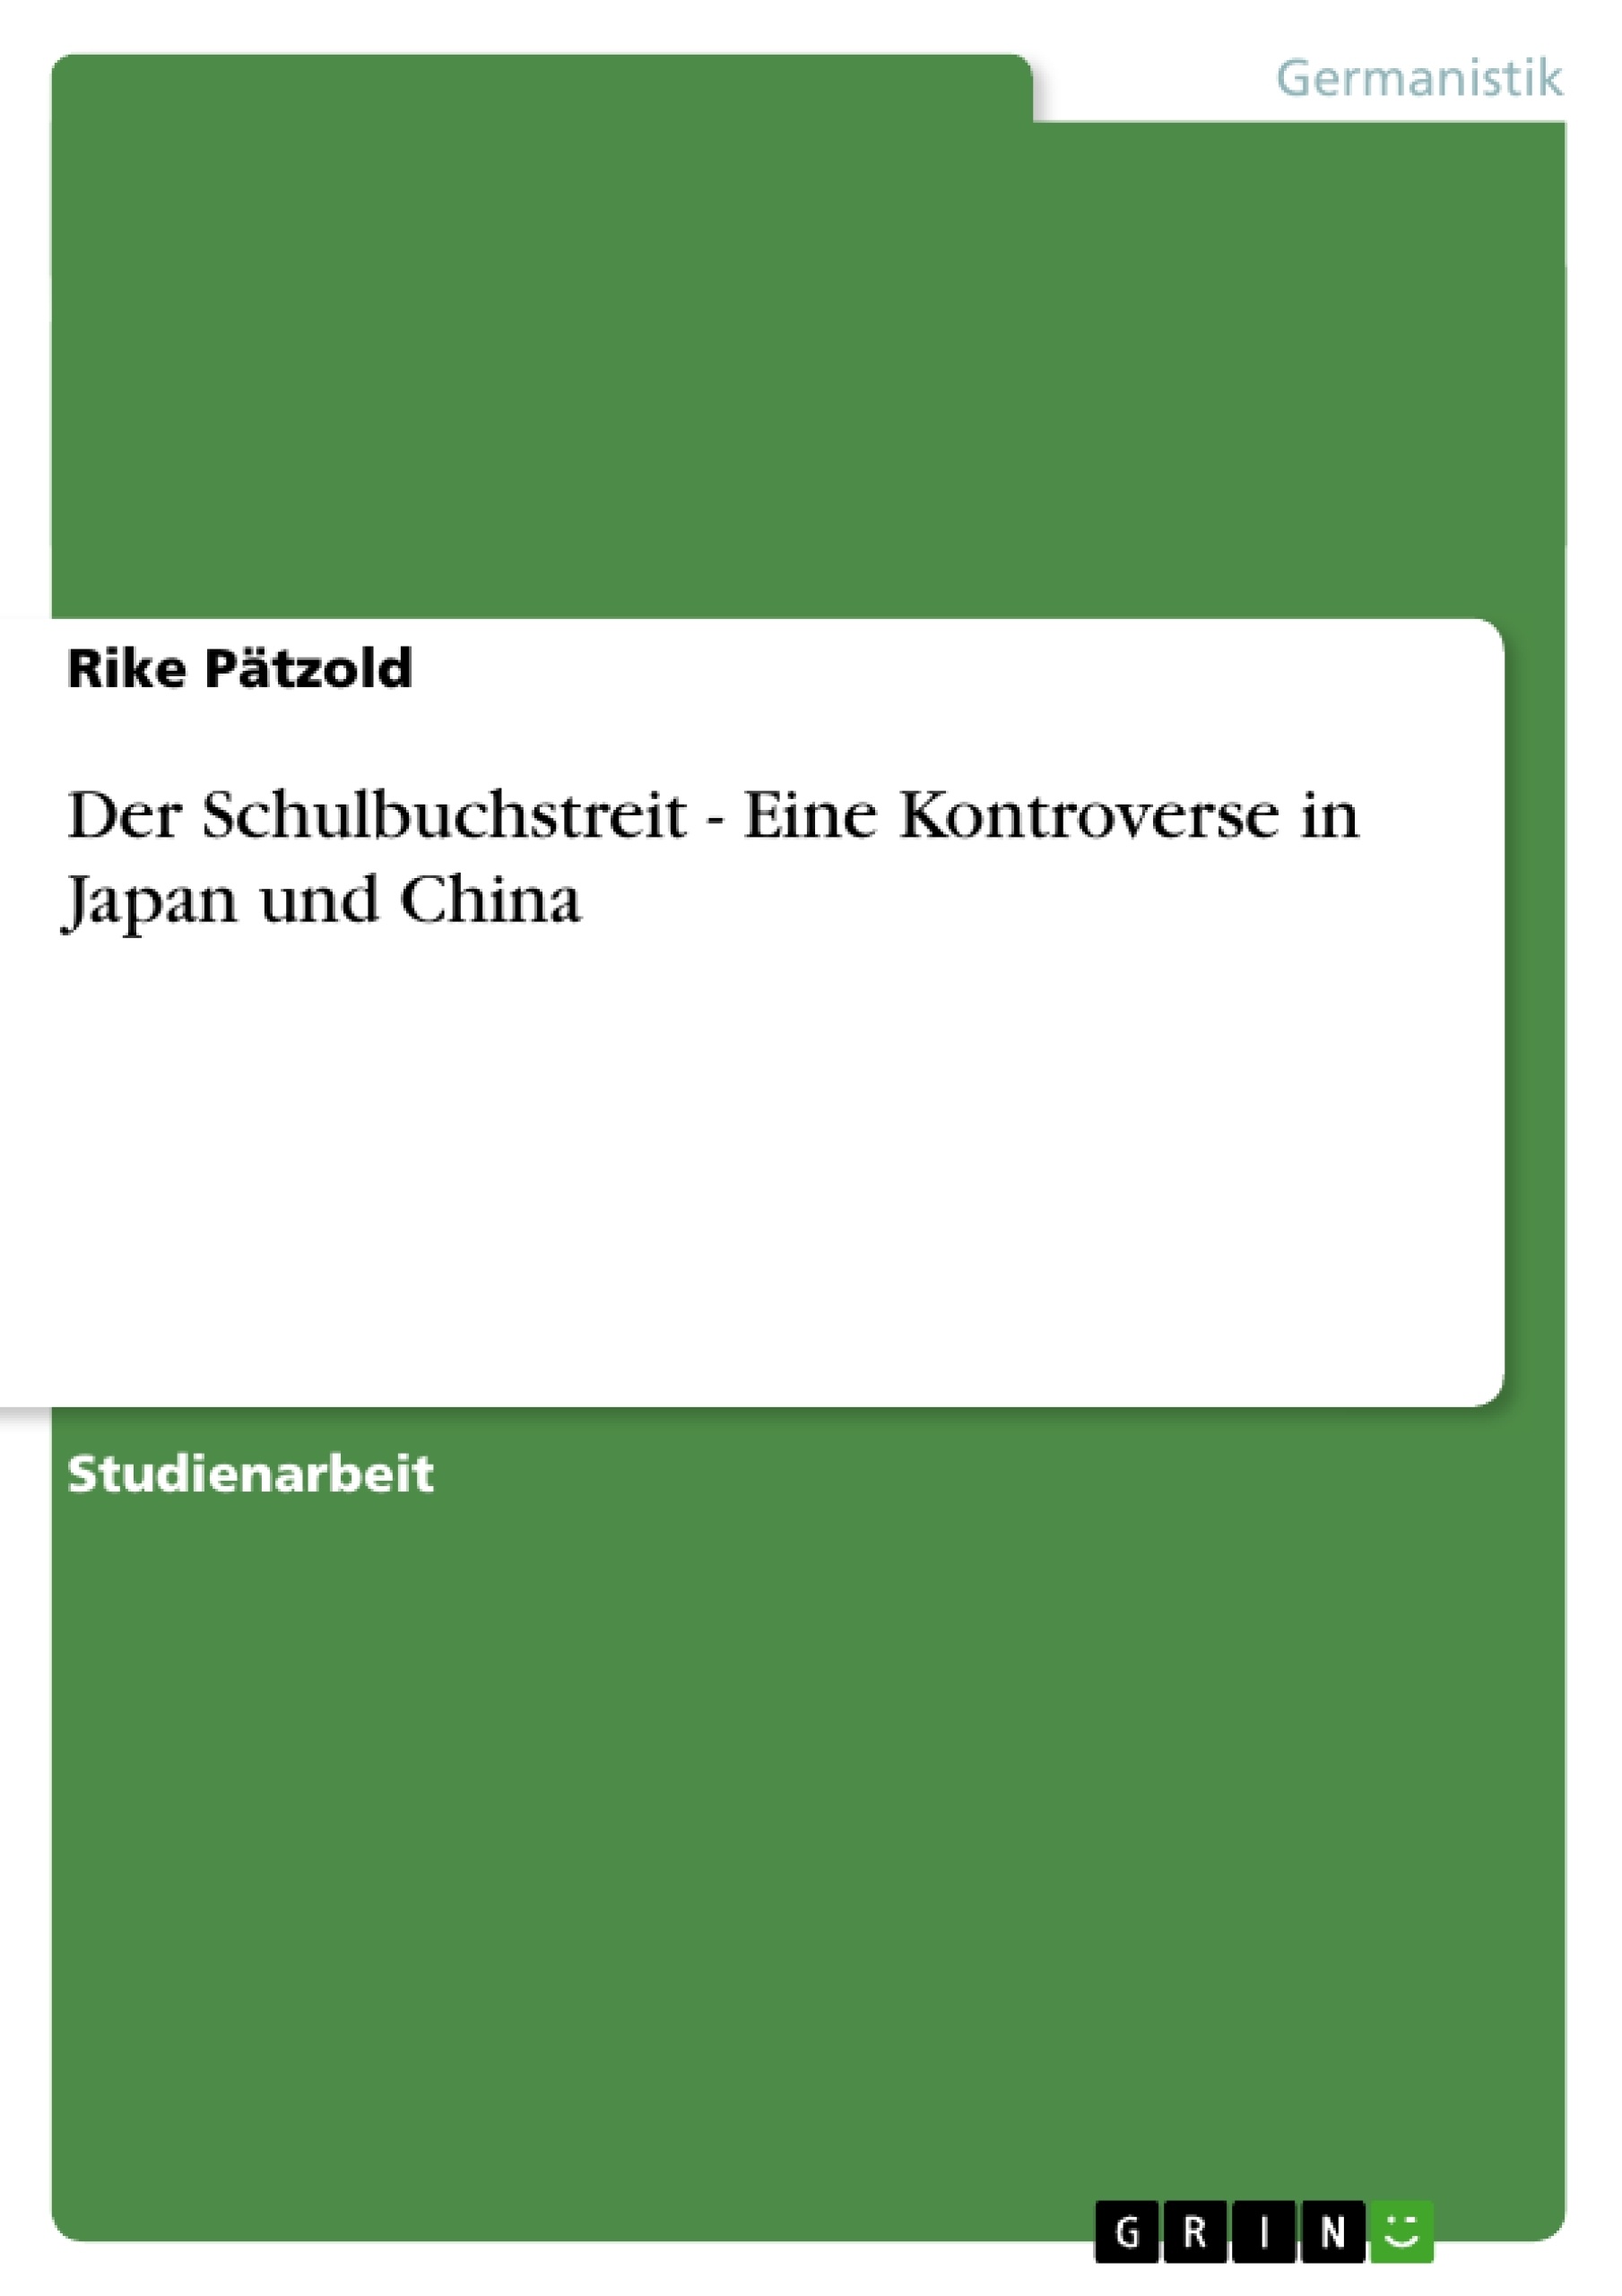 Título: Der Schulbuchstreit - Eine Kontroverse in Japan und China